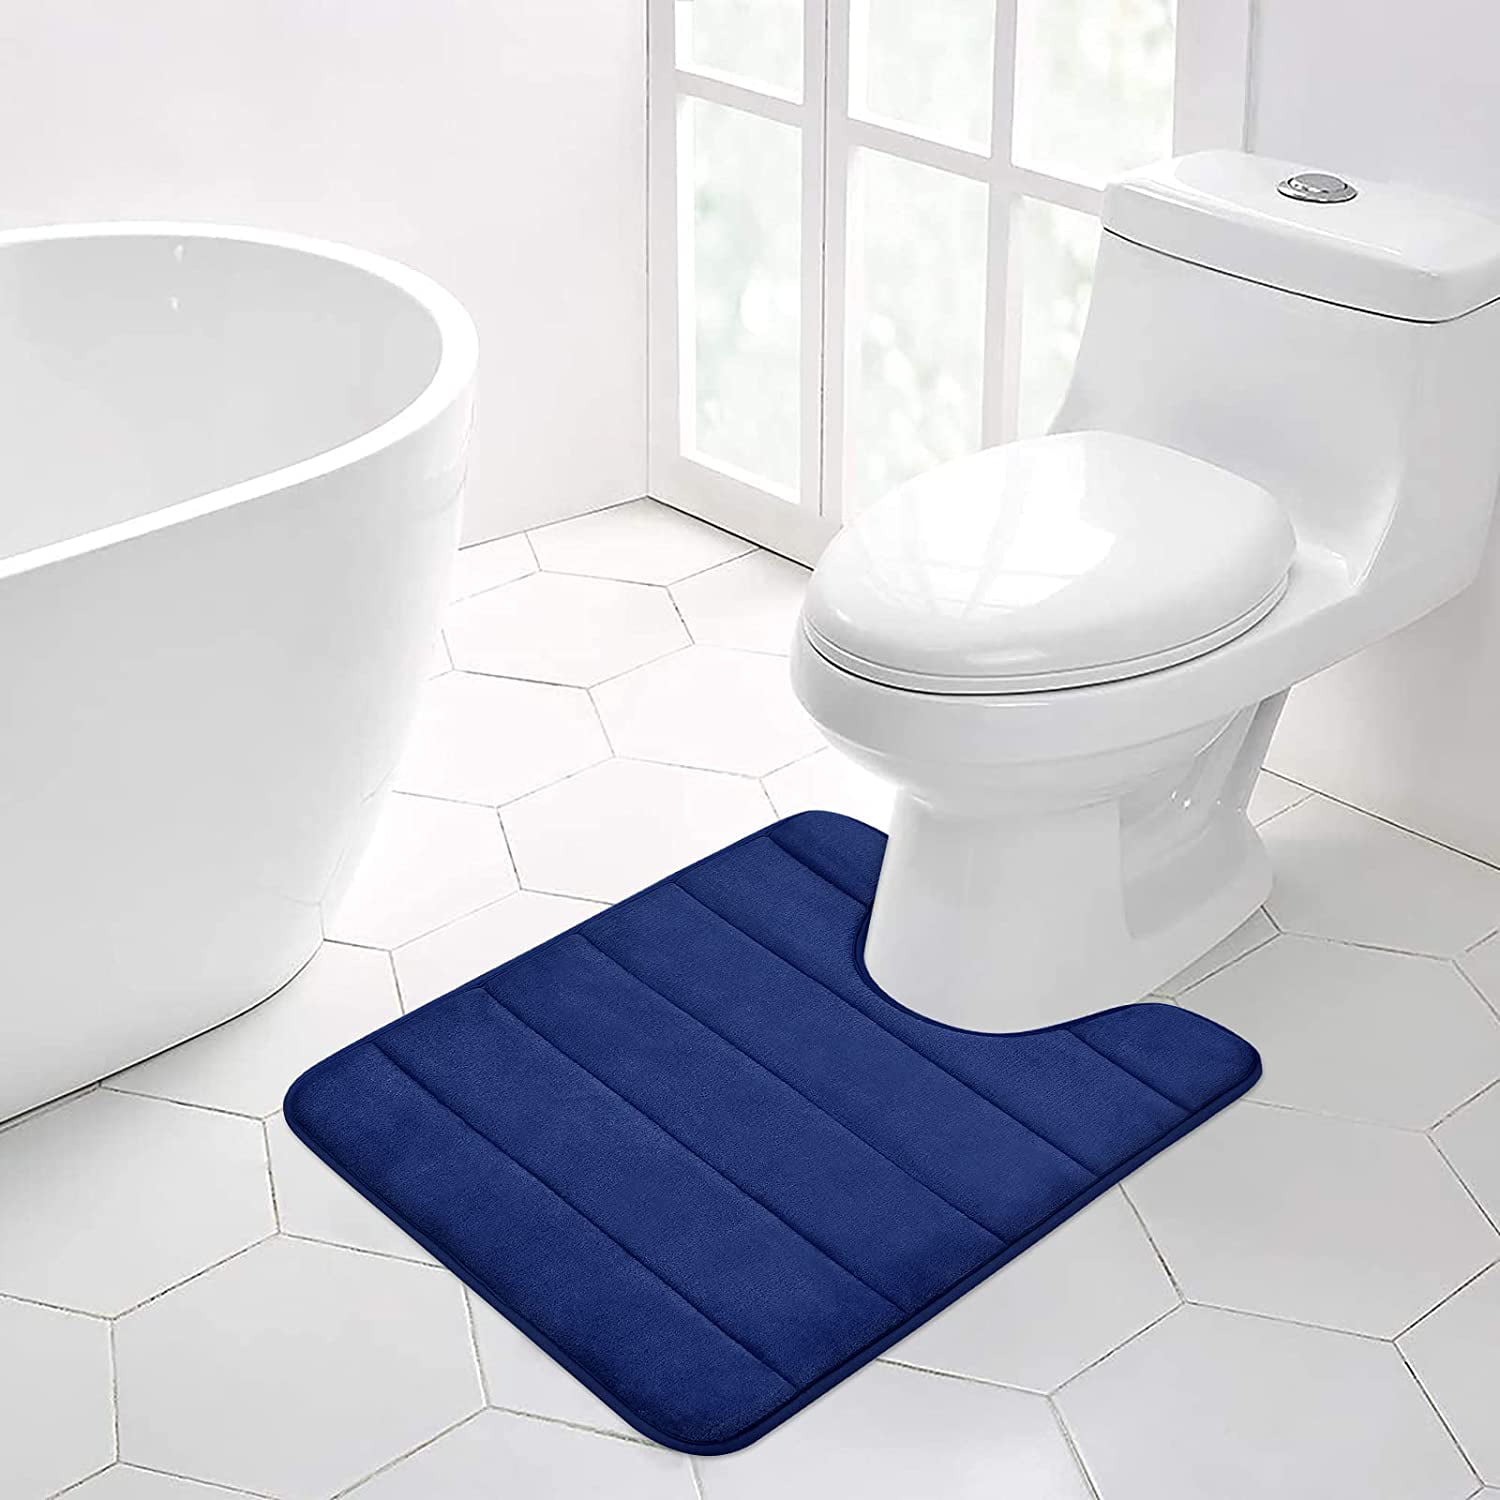 Details about   Foot Print Style Bath Mat Toilet Pedestal Set Non Slip Bathroom shower Rugs 2Pcs 